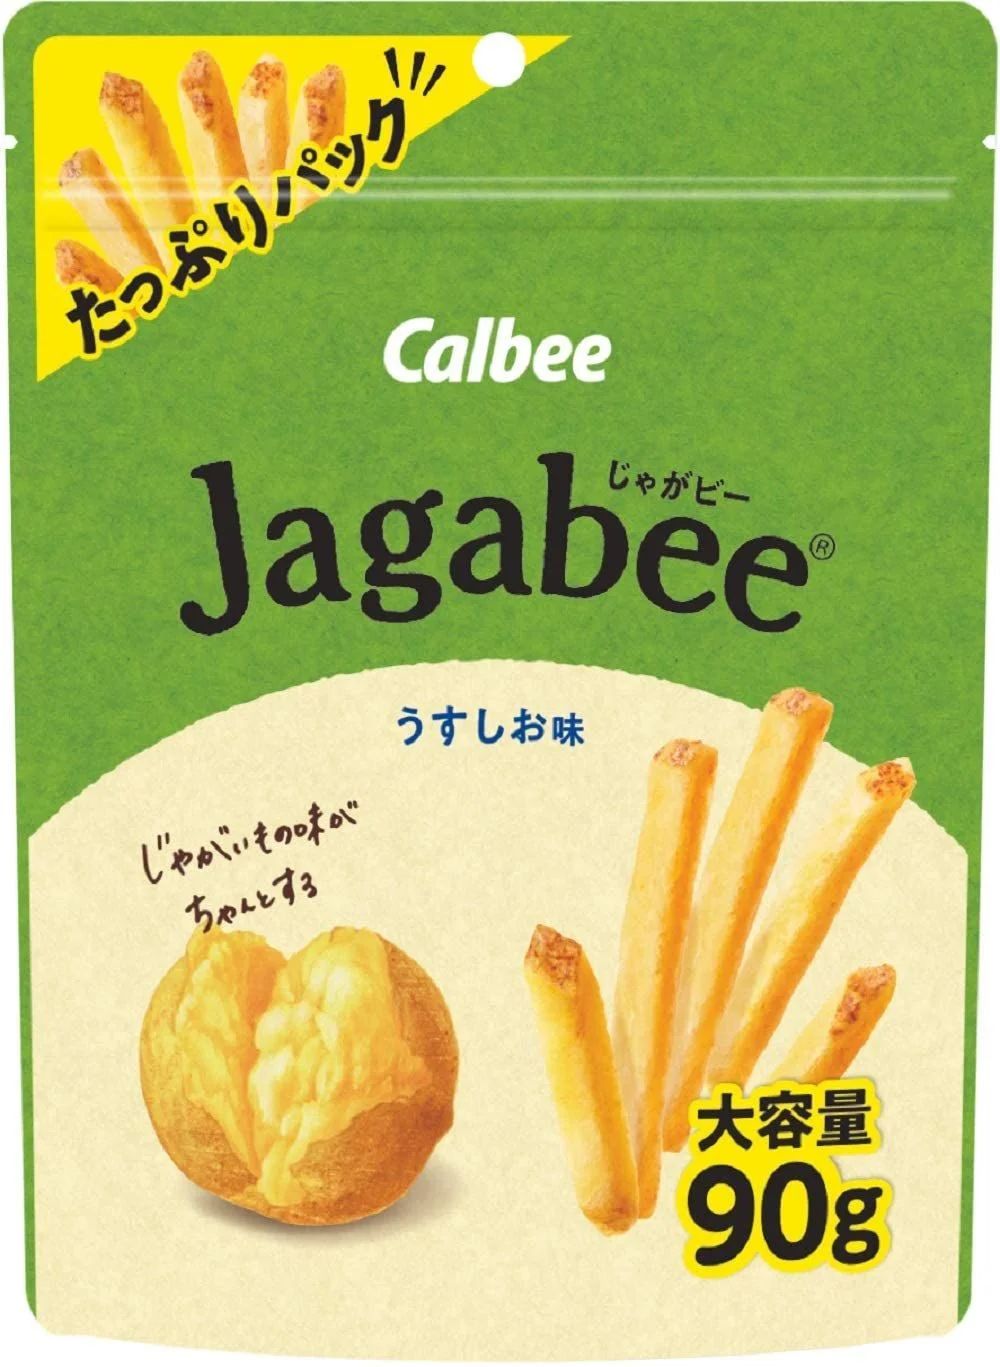 カルビー Jagabee うすしお味 たっぷりパック 90g ×12袋